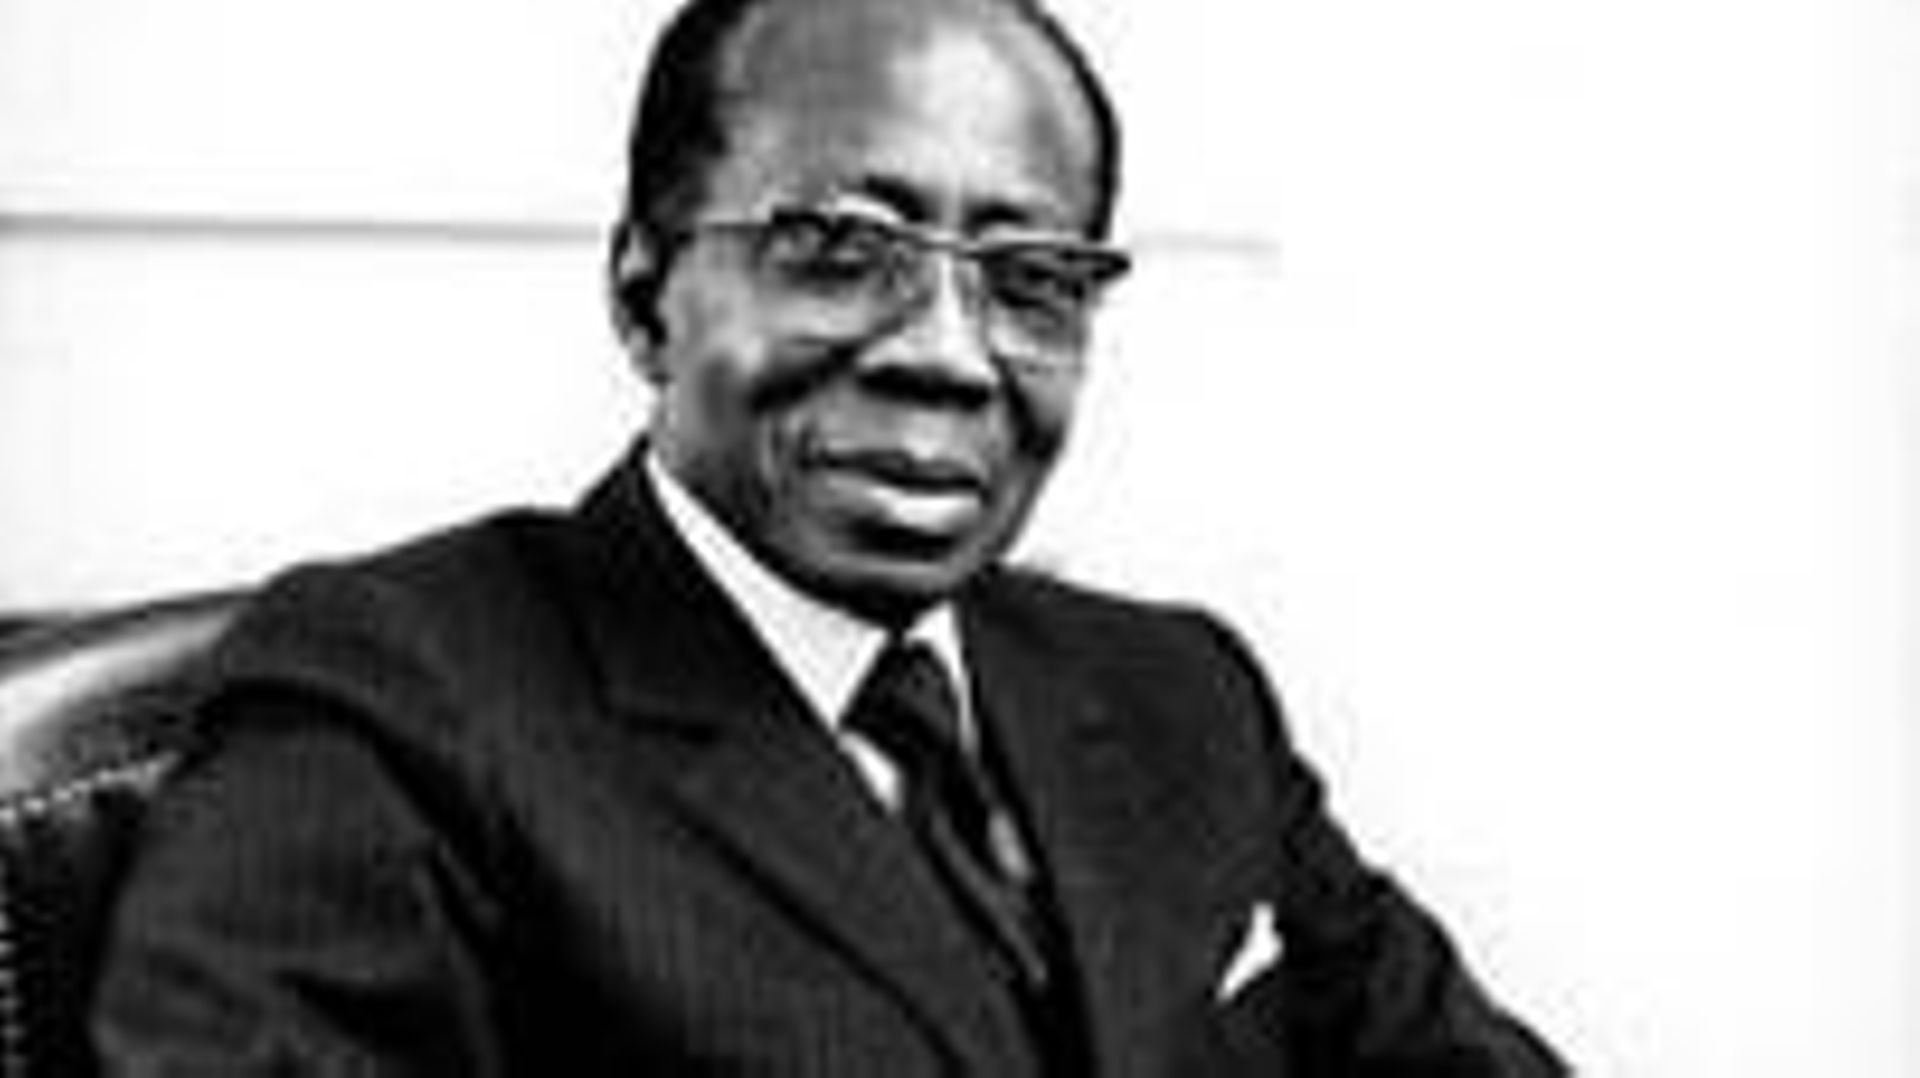 Leopold Sedar Senghor, premier Président du Sénégal indépendant de 1960 à 1980.